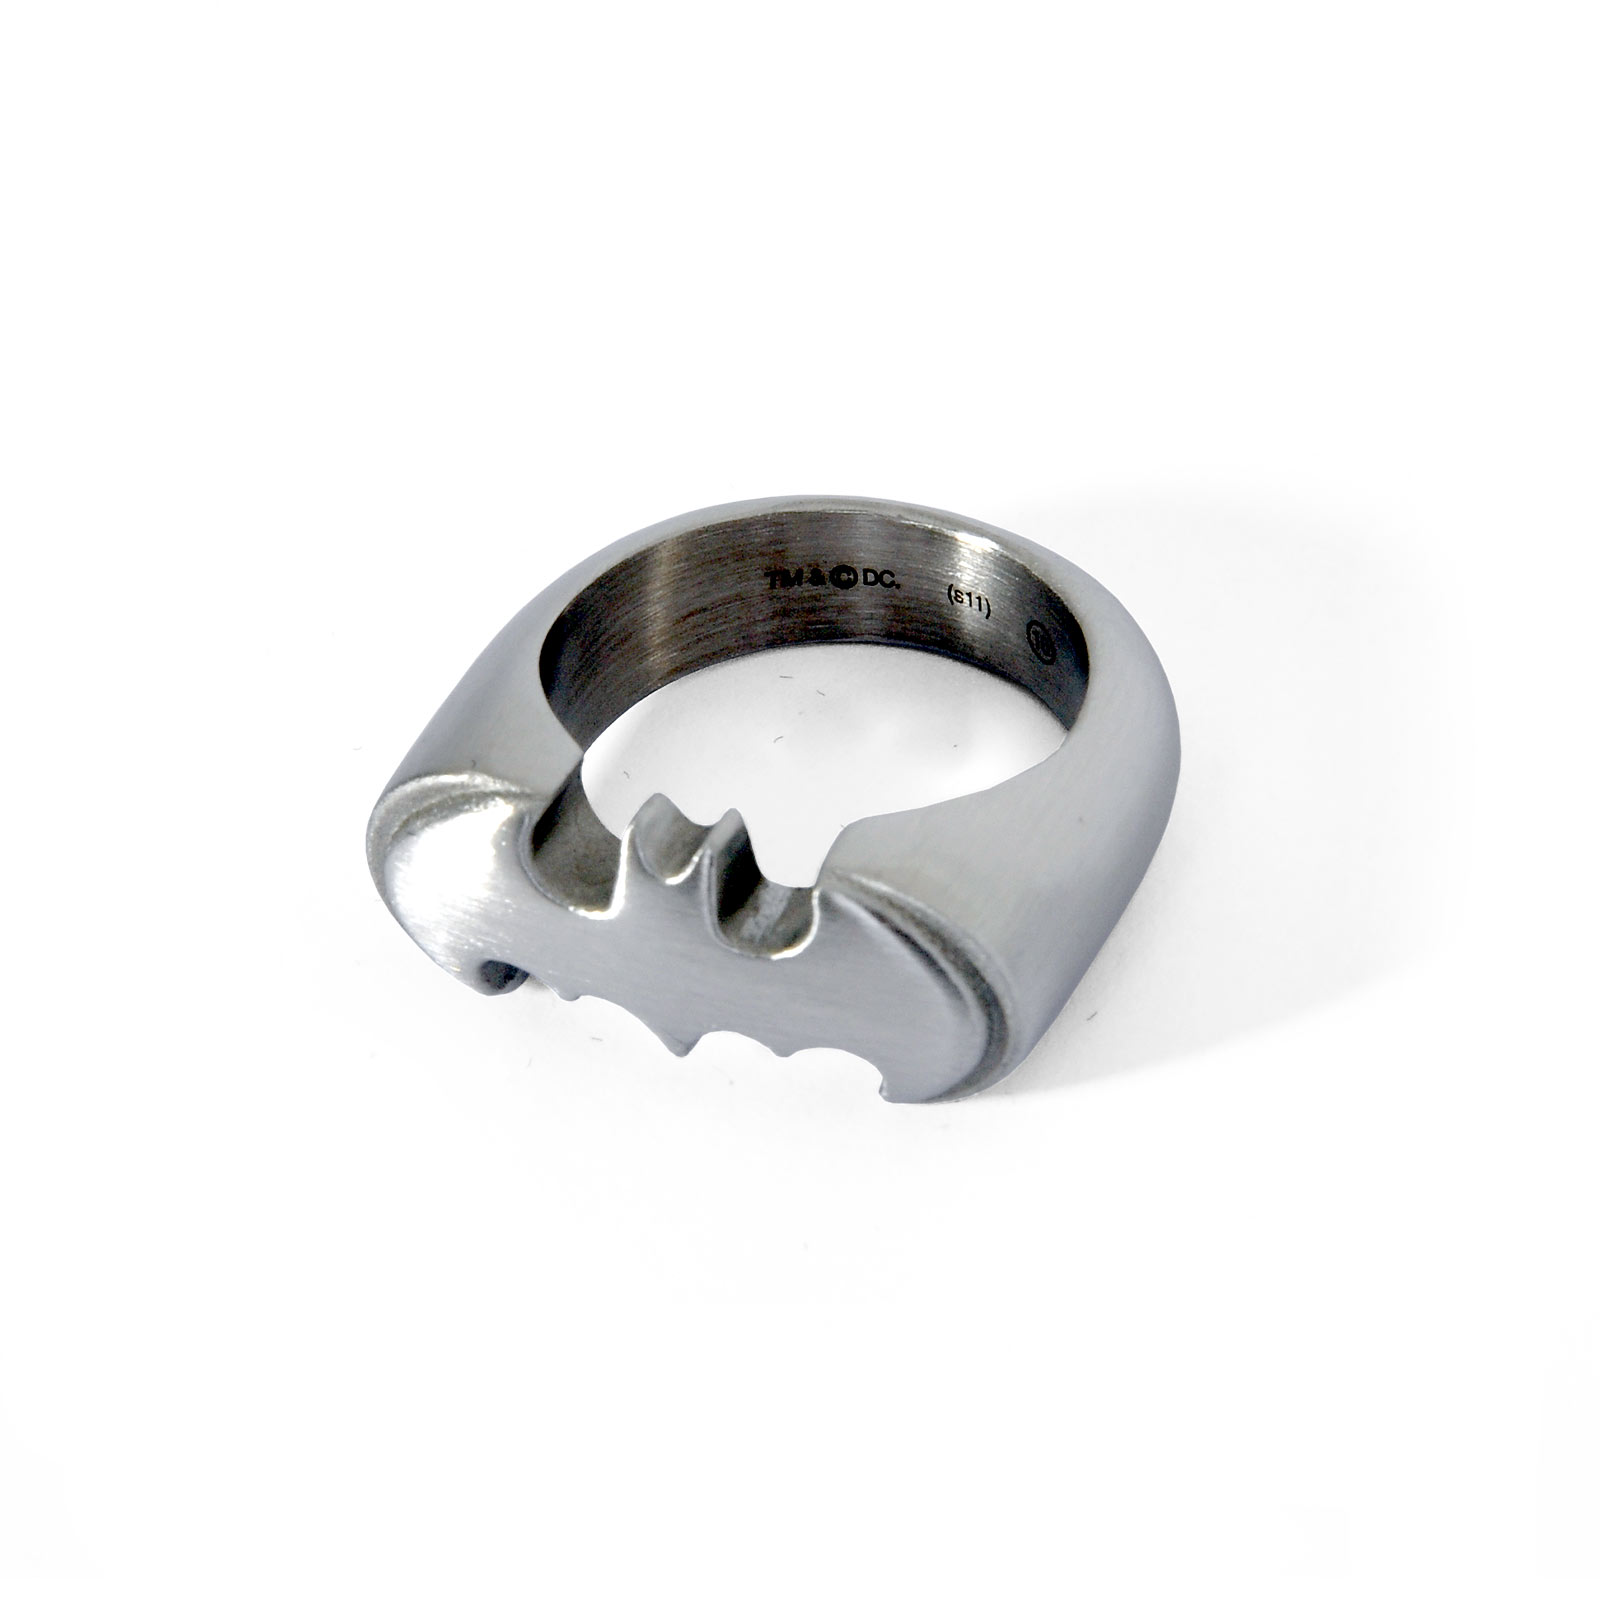 Batman - Emblem Ring